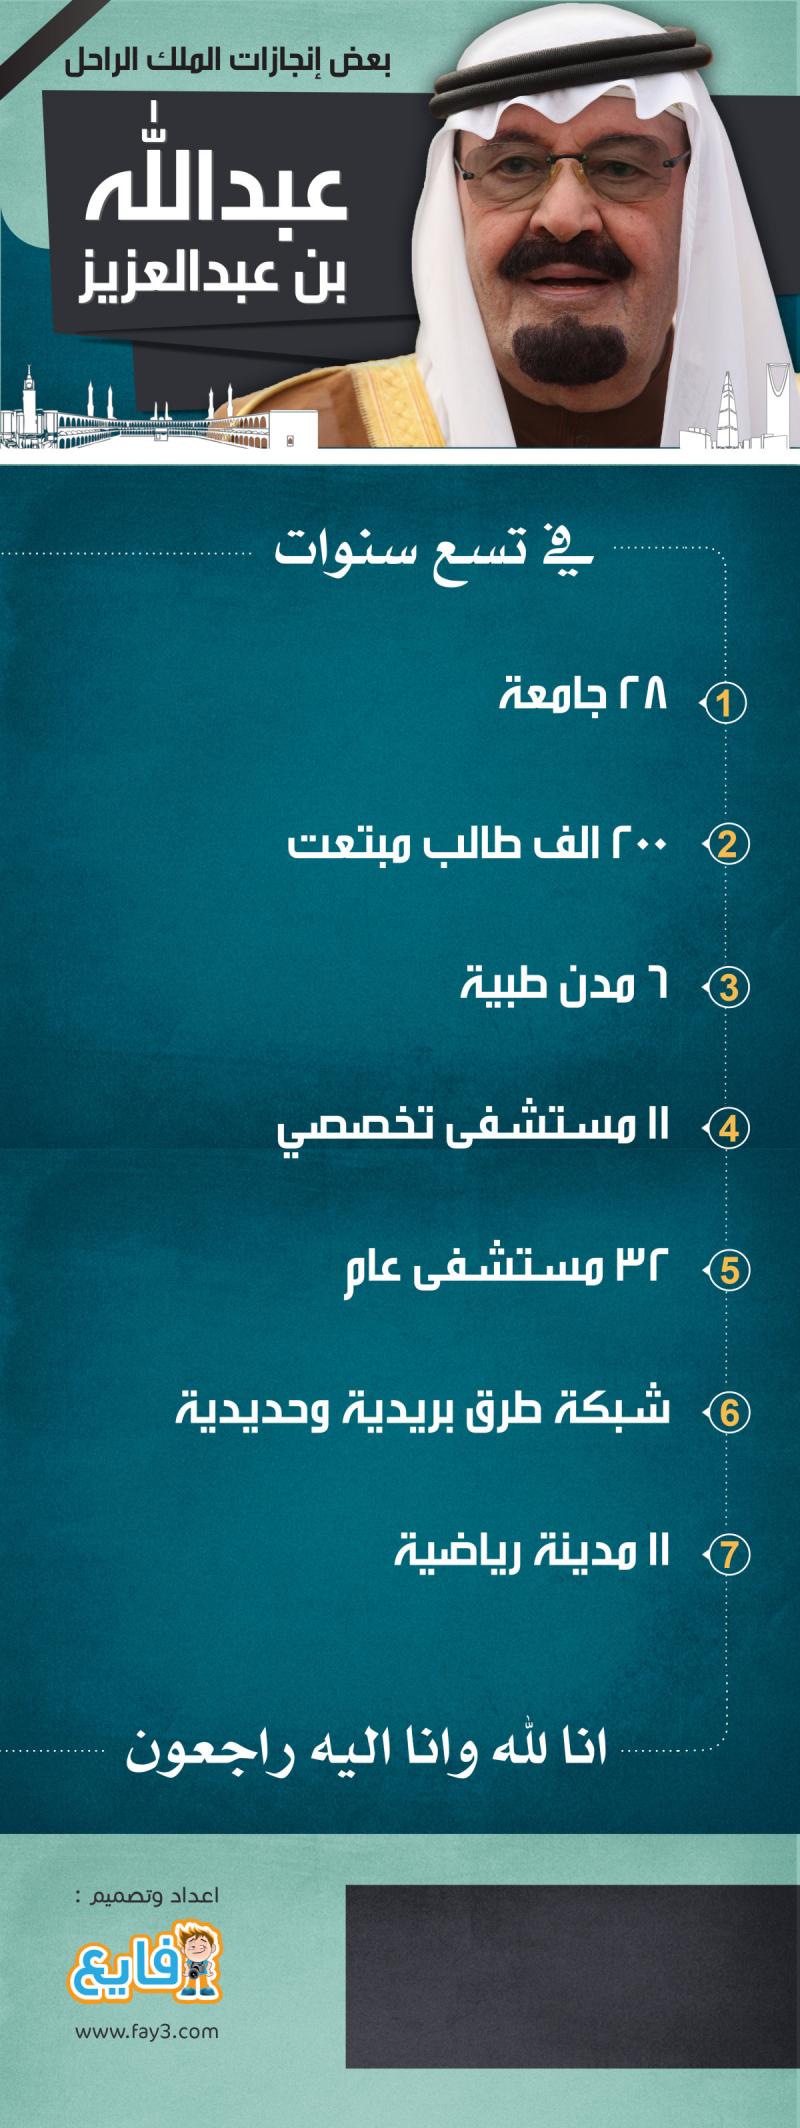 Fay3 - بعض إنجازات الملك الراحل عبدالله بن عبدالعزيز رحمه الله #السعودية  #انفوجرافيك